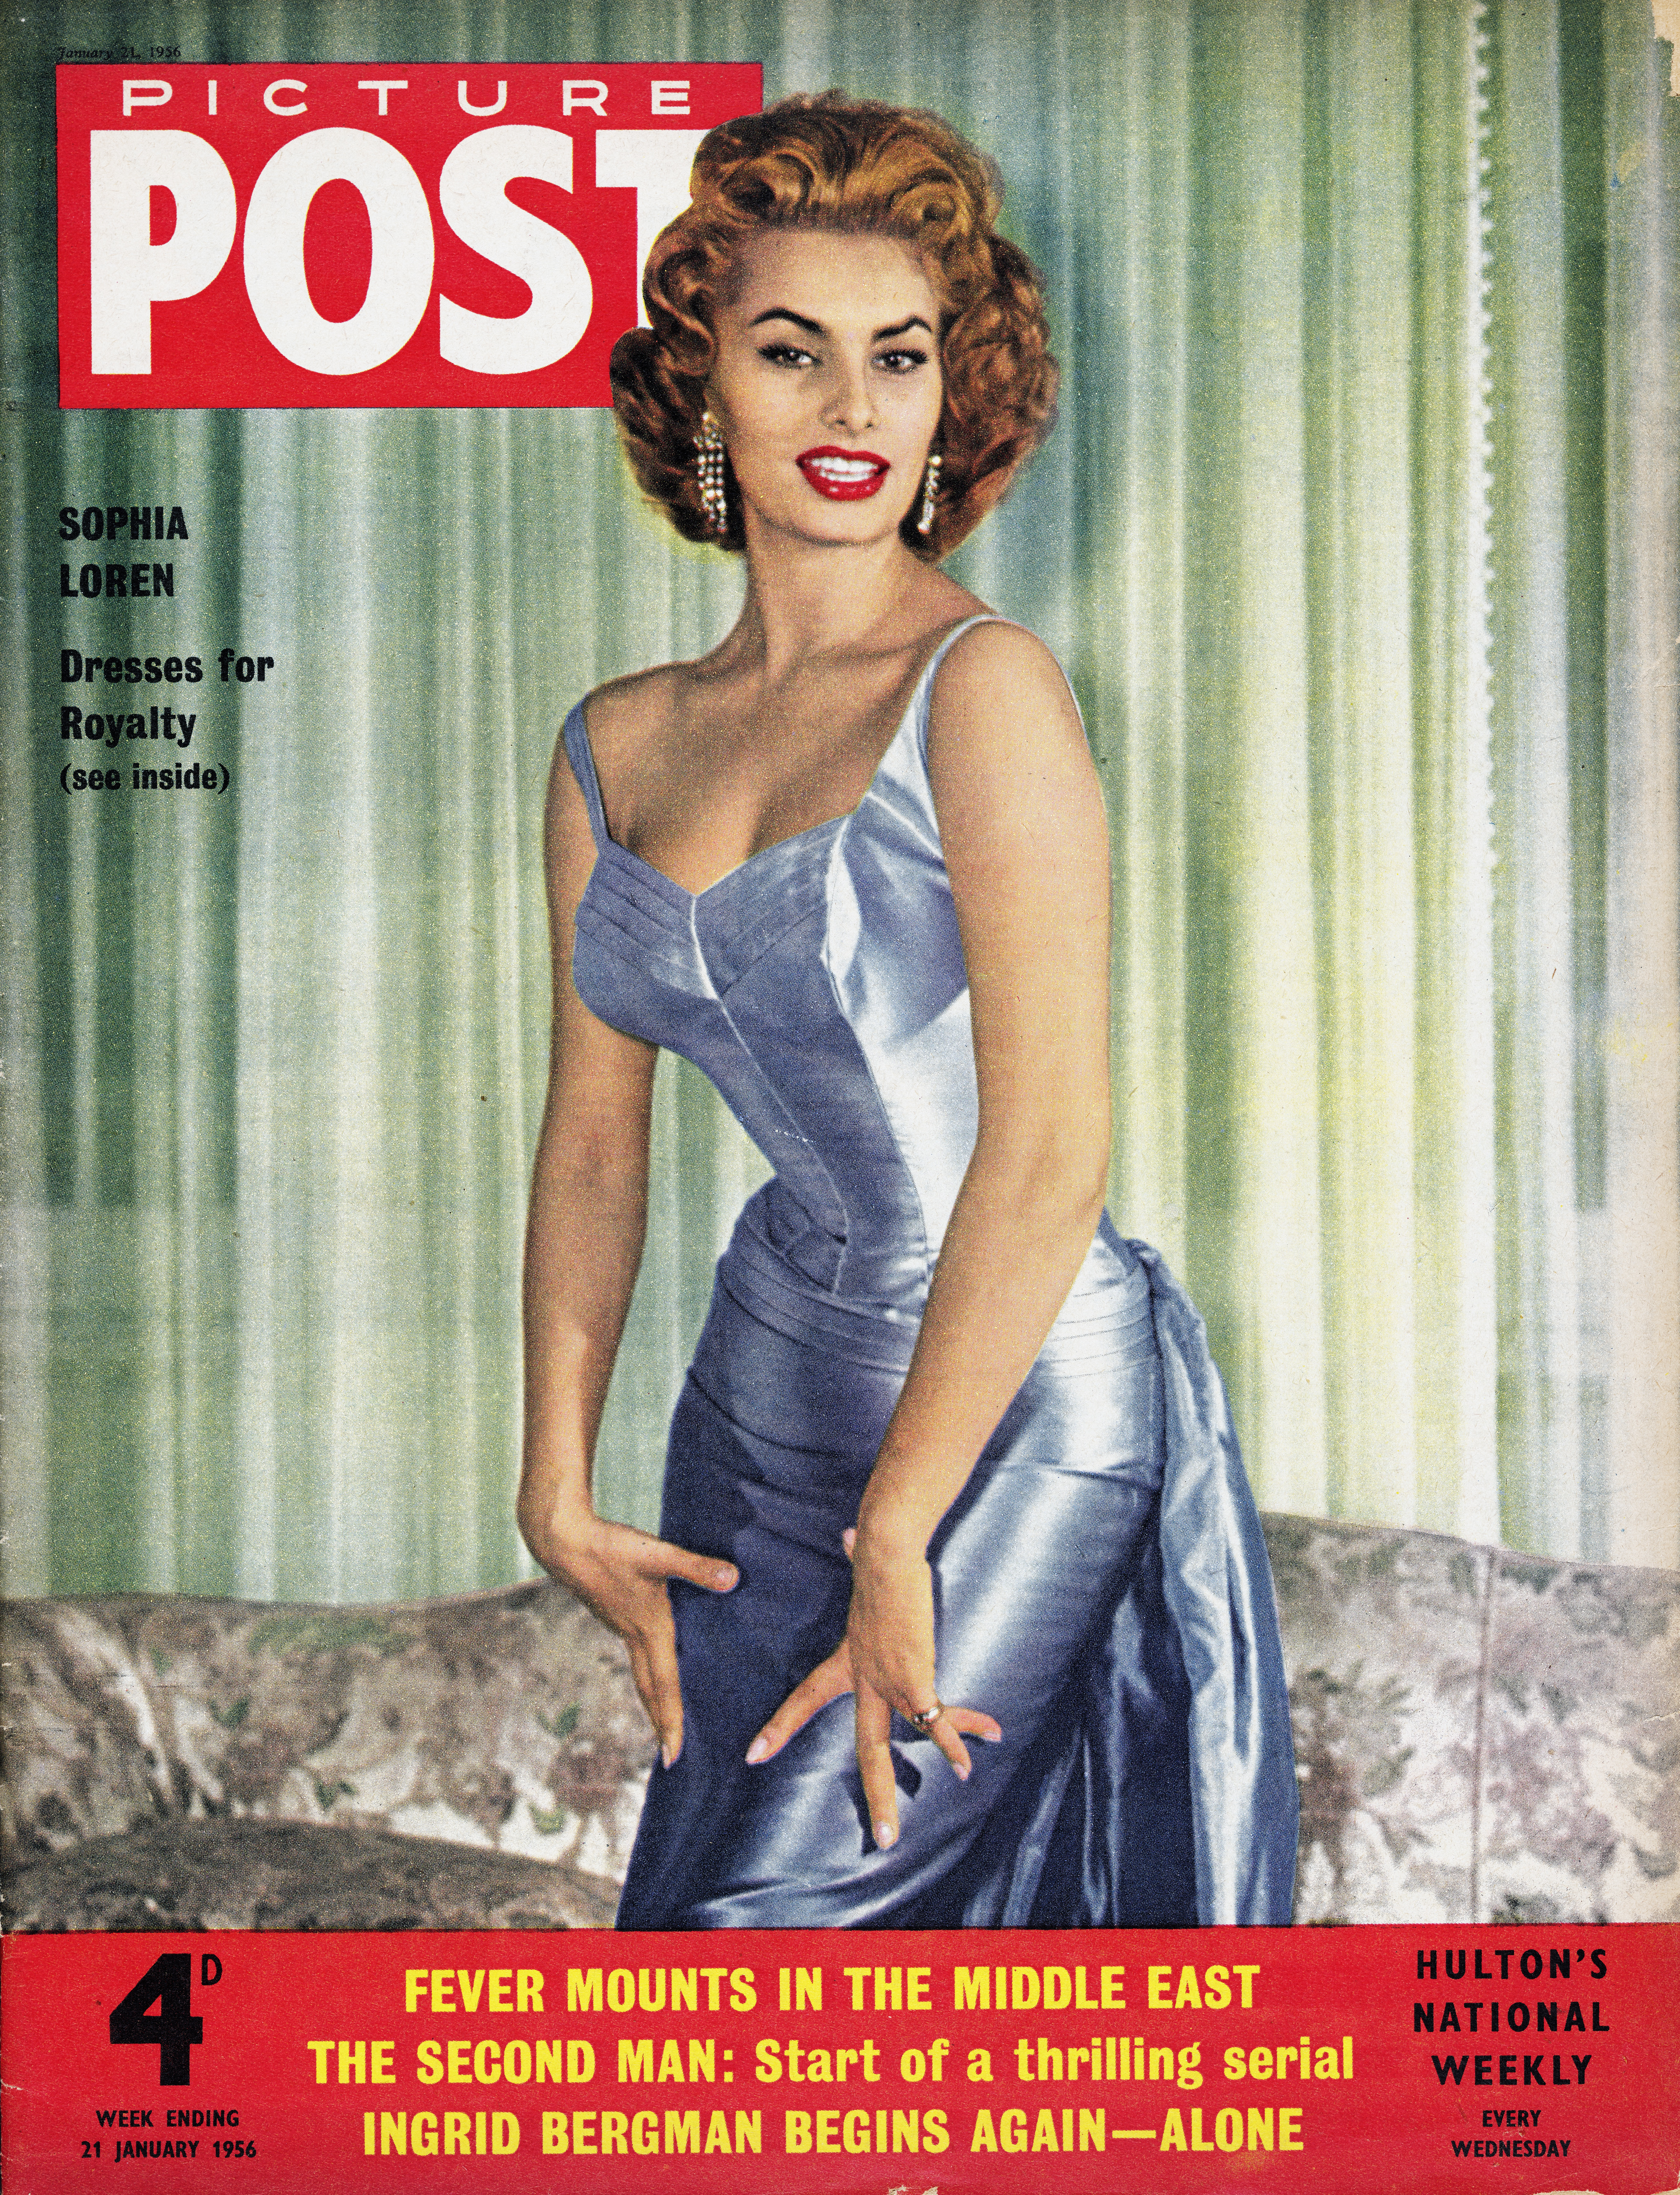 Sophia Loren en couverture du magazine Picture Post en 1956 | Source : Getty Images